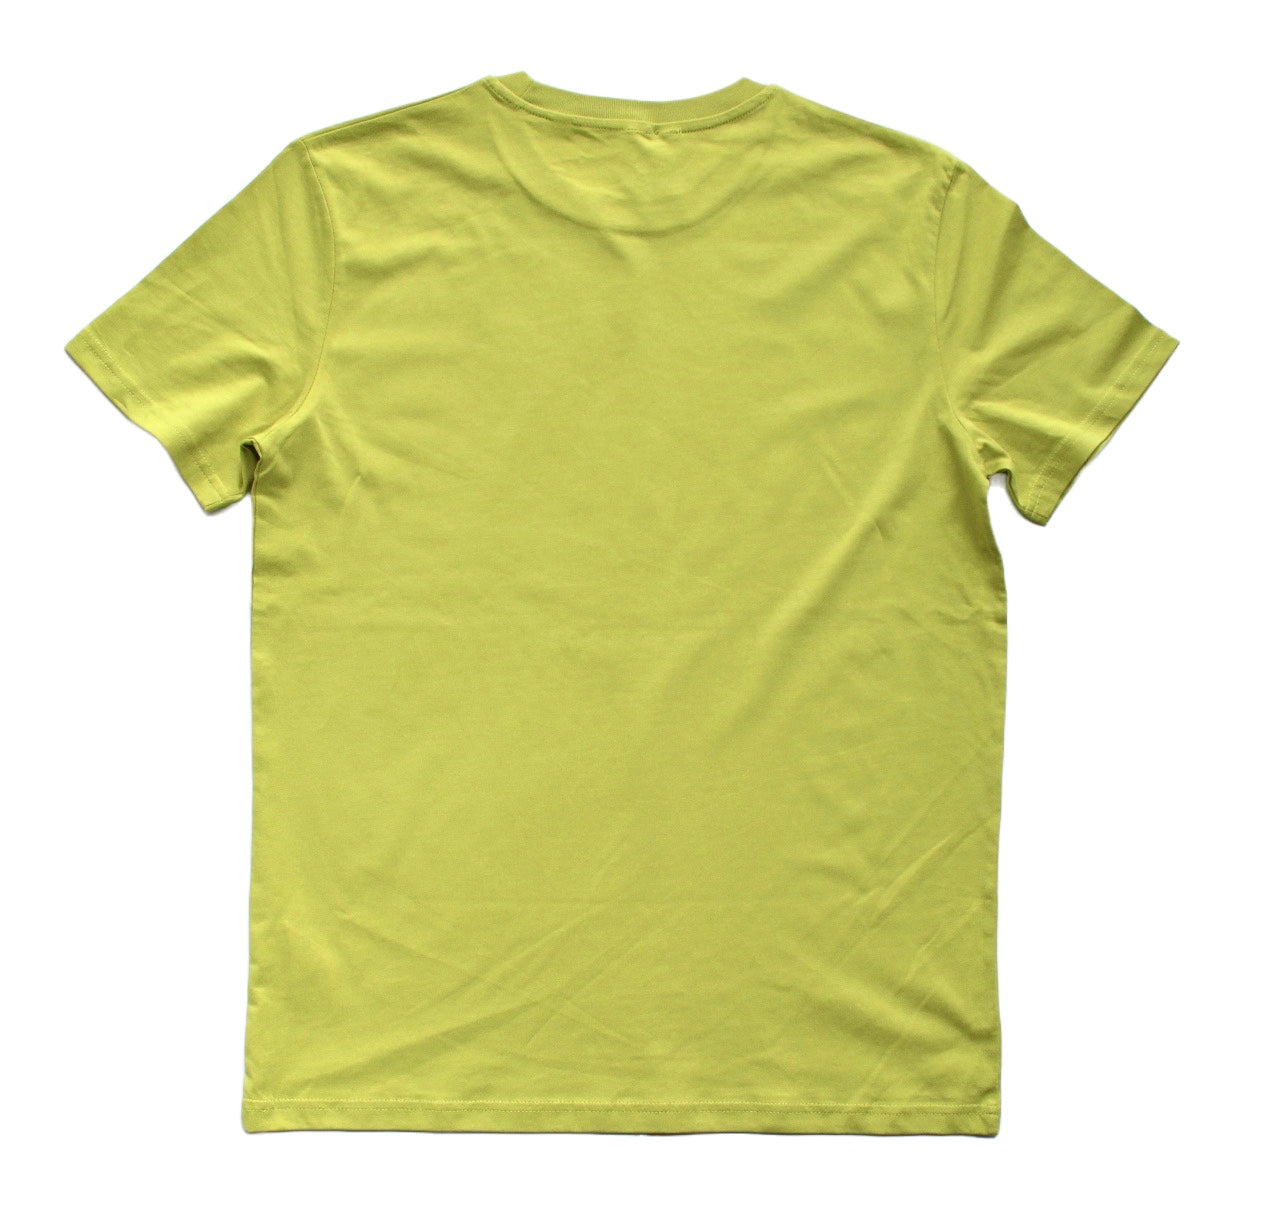 The Jordaan X The World T-shirt, Lush Green